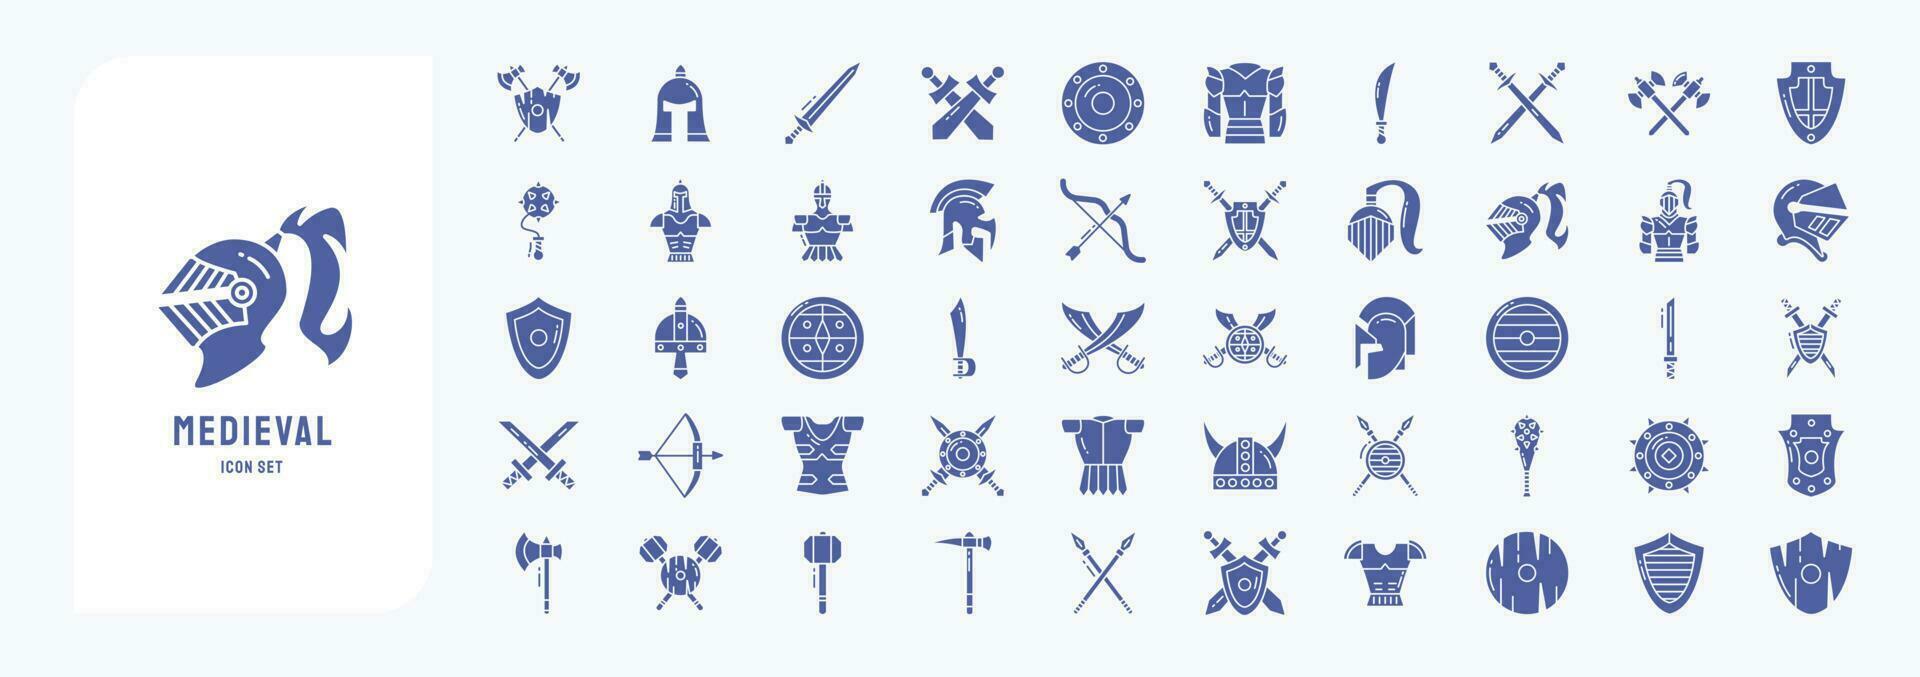 middeleeuws en koninkrijken, inclusief pictogrammen Leuk vinden schild, Romeins roer, oorlog en meer vector